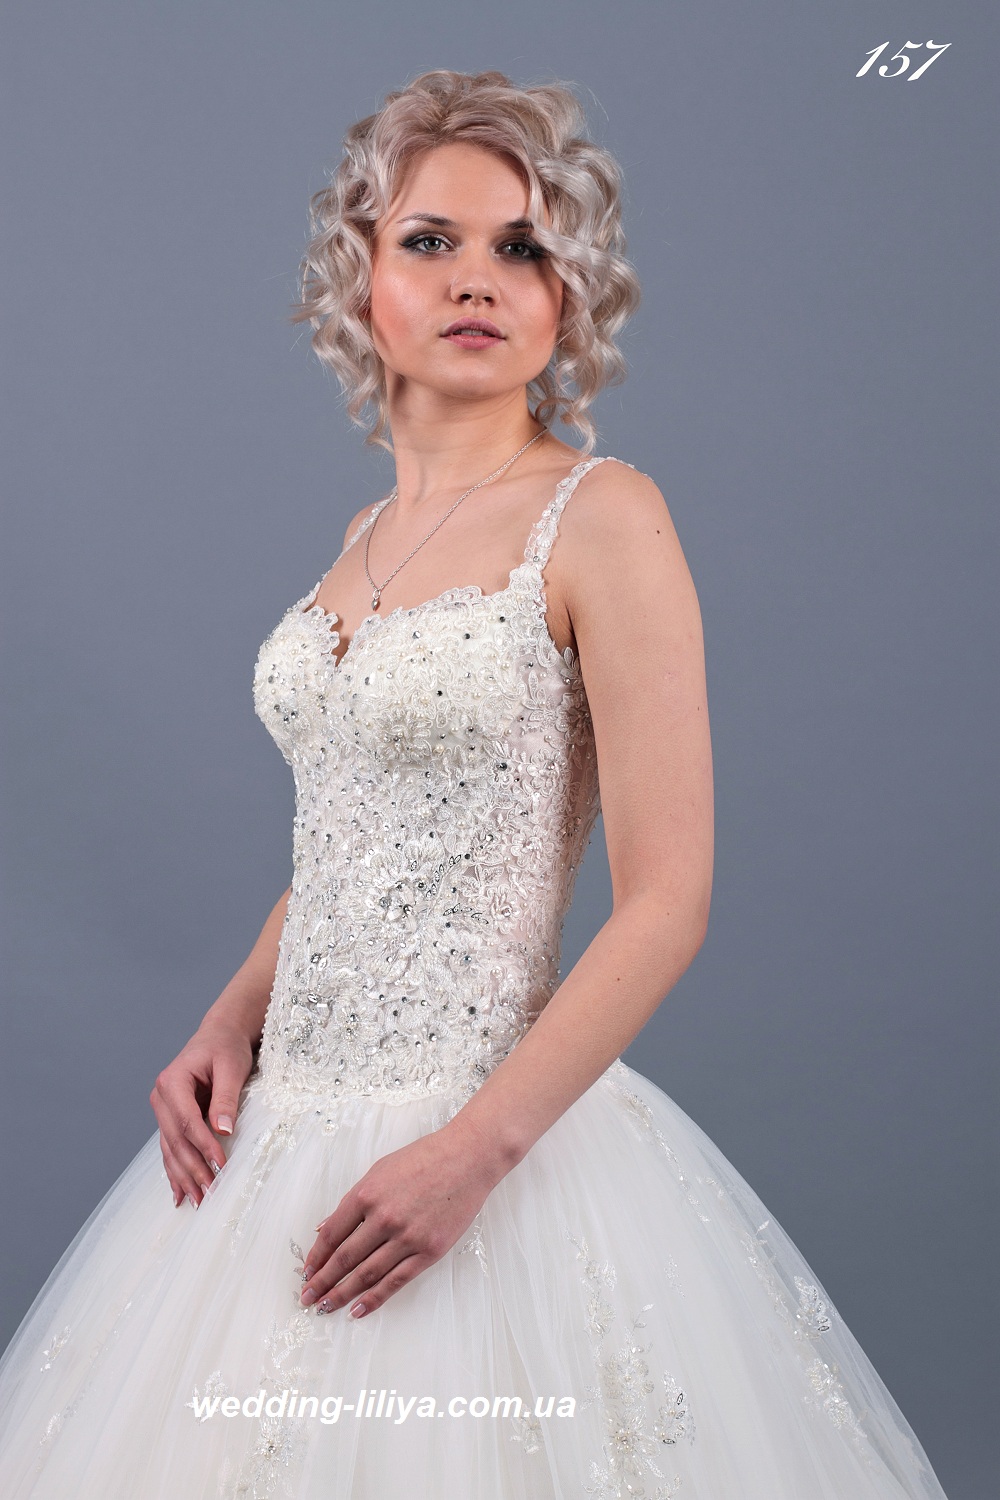 Свадебное платье №157